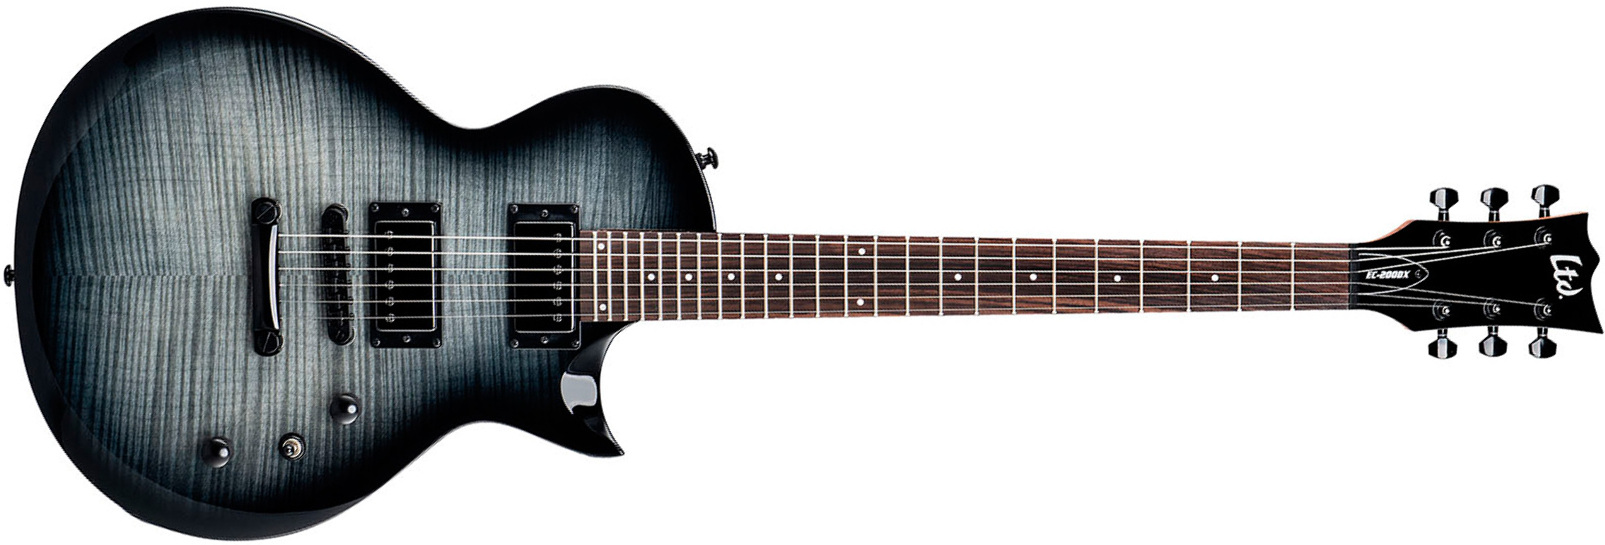 Ltd Ec200dx 2h Ht Rw - Charcoal Burst - Enkel gesneden elektrische gitaar - Main picture